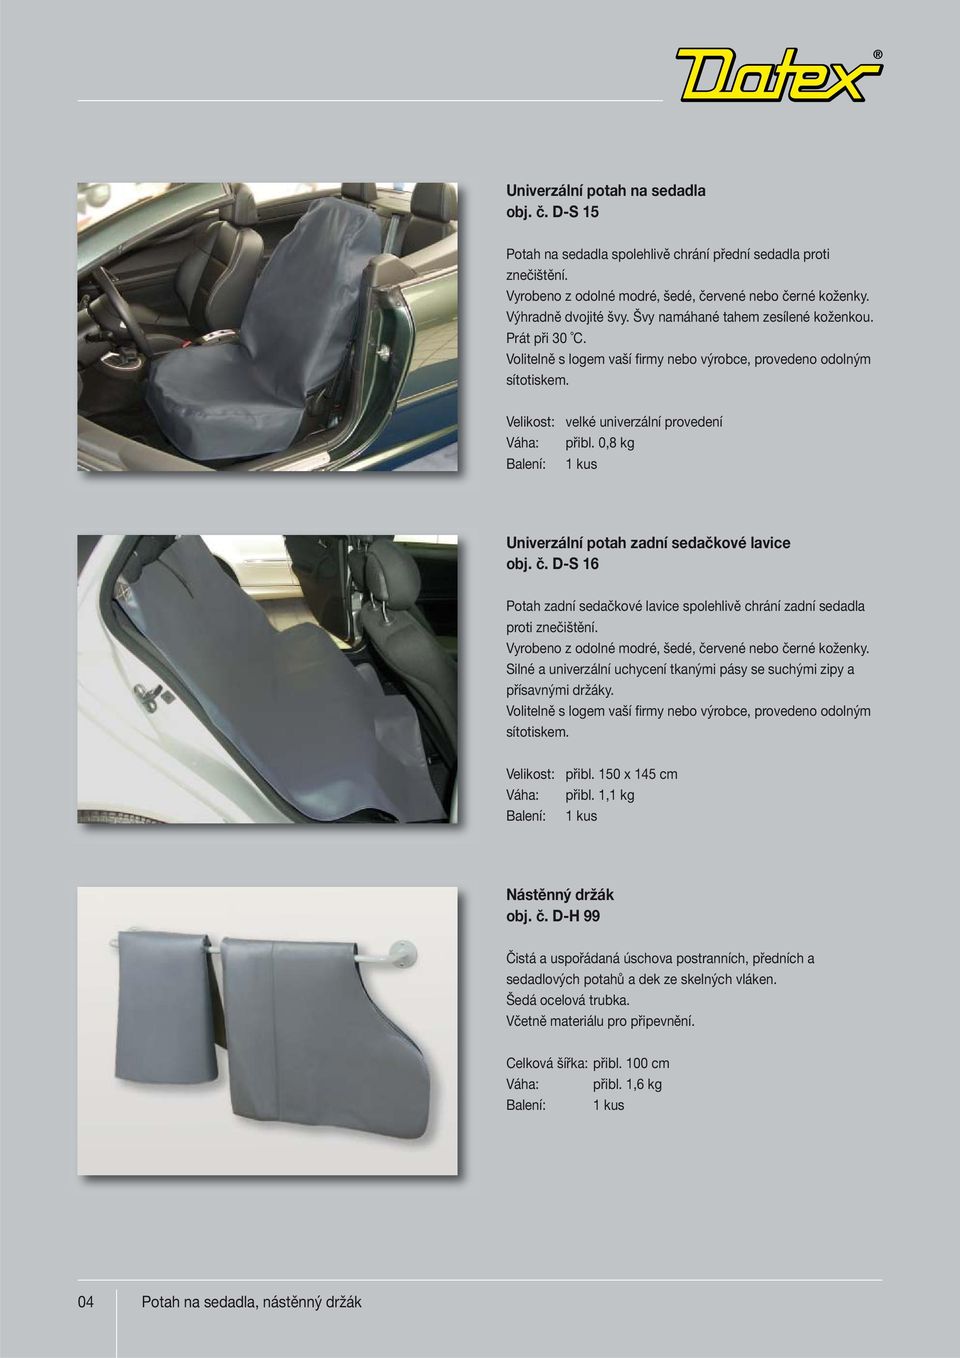 D-S 16 Potah zadní sedačkové lavice spolehlivě chrání zadní sedadla proti znečištění. Vyrobeno z odolné modré, šedé, červené nebo černé koženky.